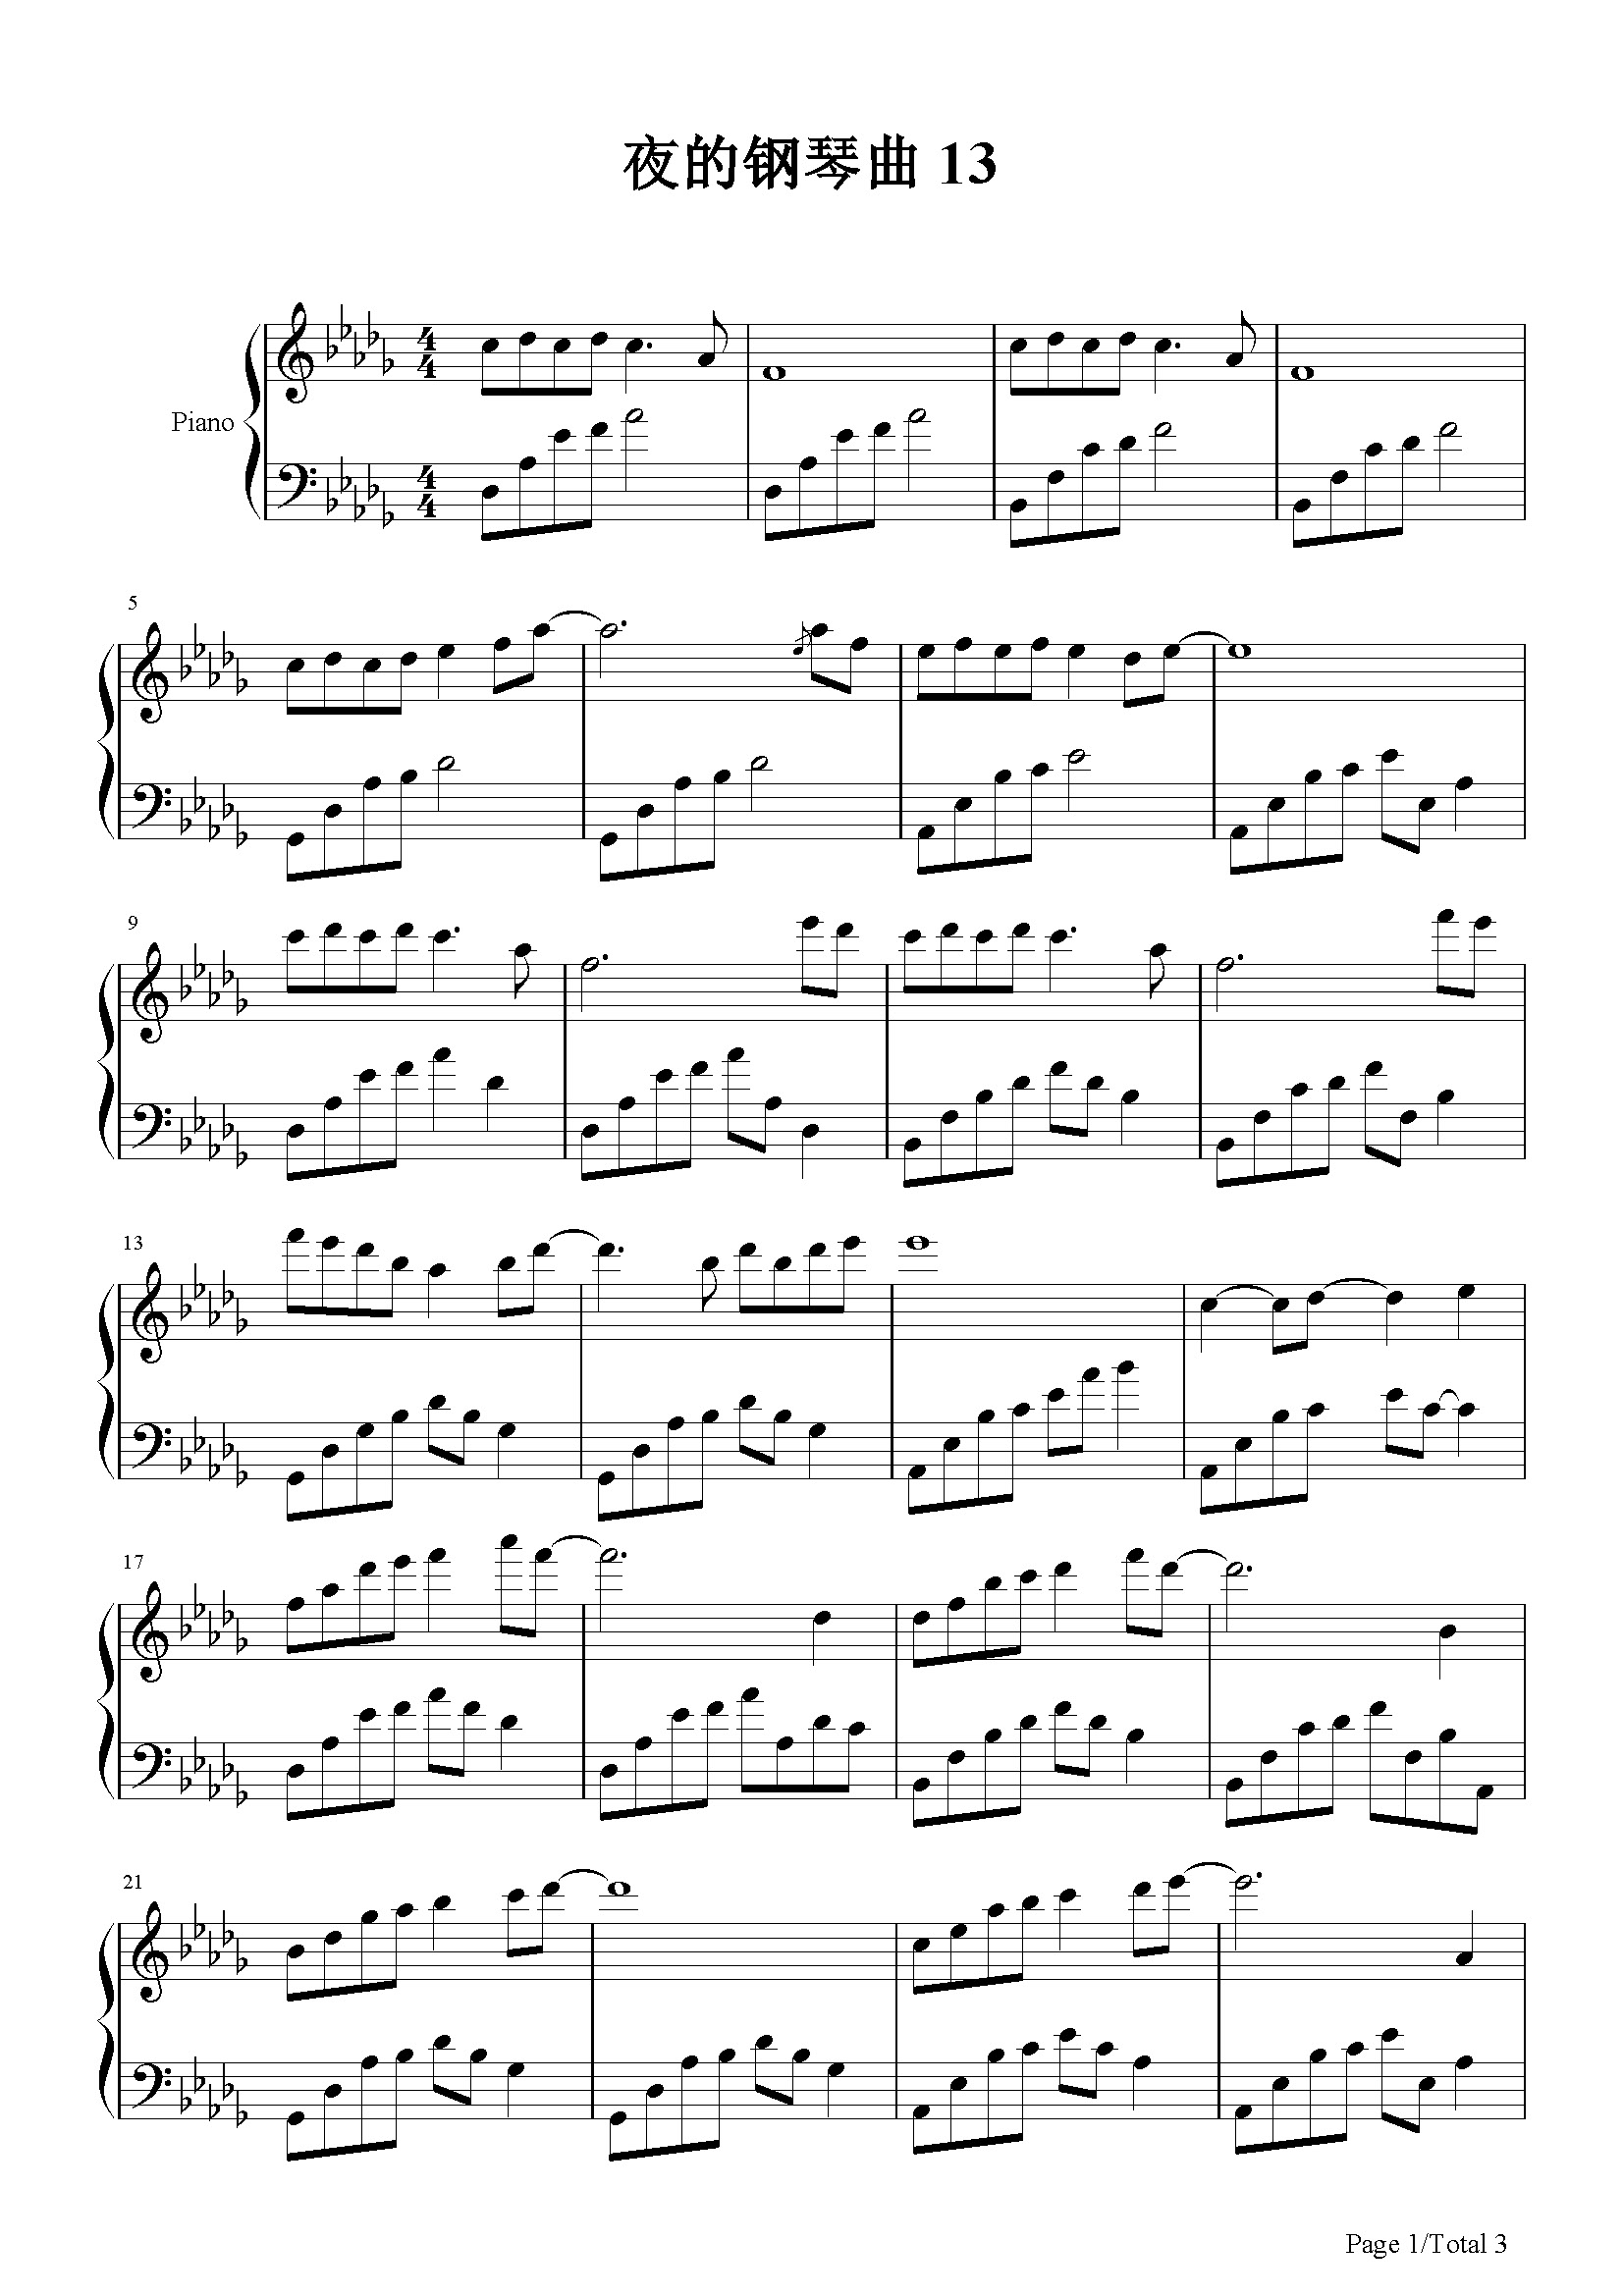 夜的钢琴曲-13-石进-降d调 -流行钢琴五线谱